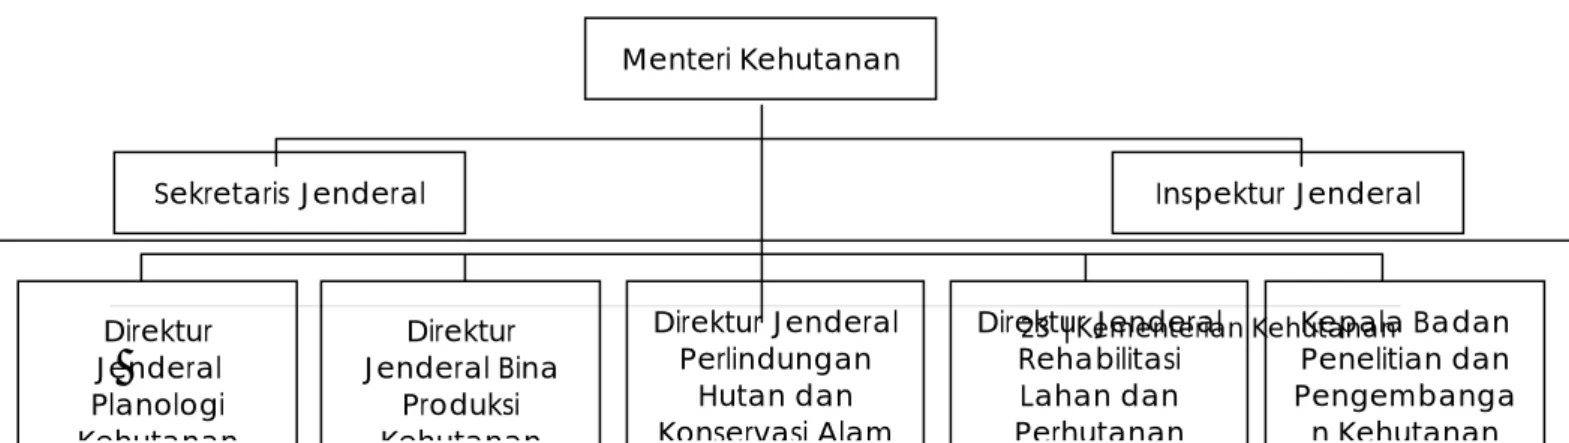 Gambar 5.  Struktur Organisasi Jabatan lingkup Kementerian  Kehutanan   Menteri Kehutanan 